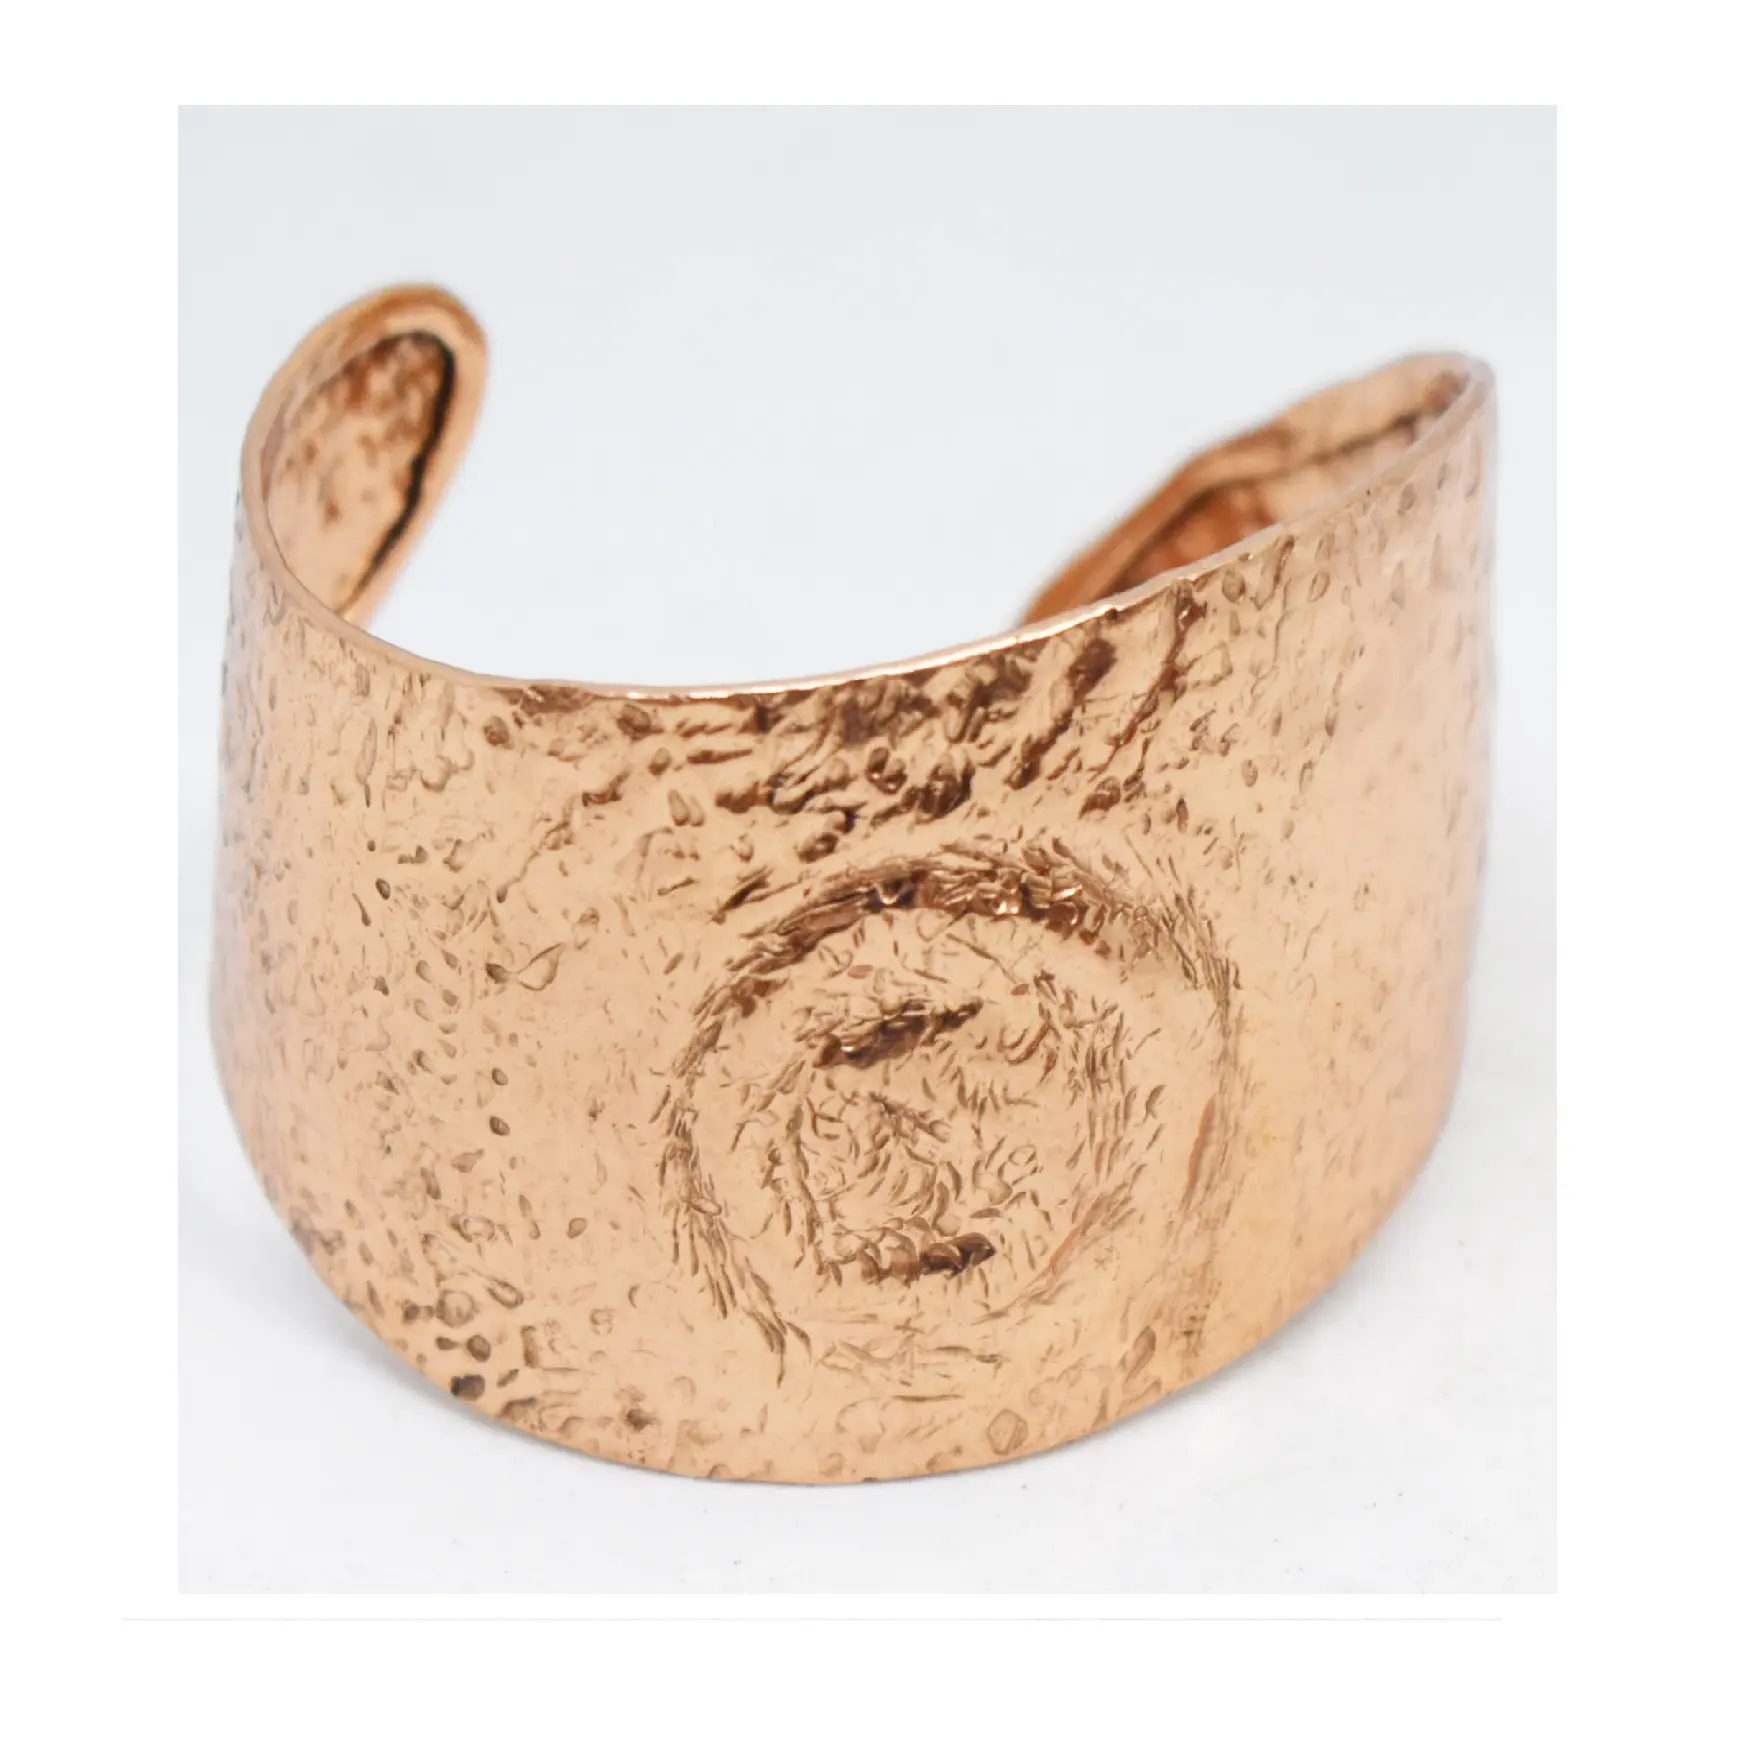 Kenya 1390 Design Flower Designed Original Colored Hand Crafted Turkish Cuff bracelets for her Handmade Bracelet Made Of Copper